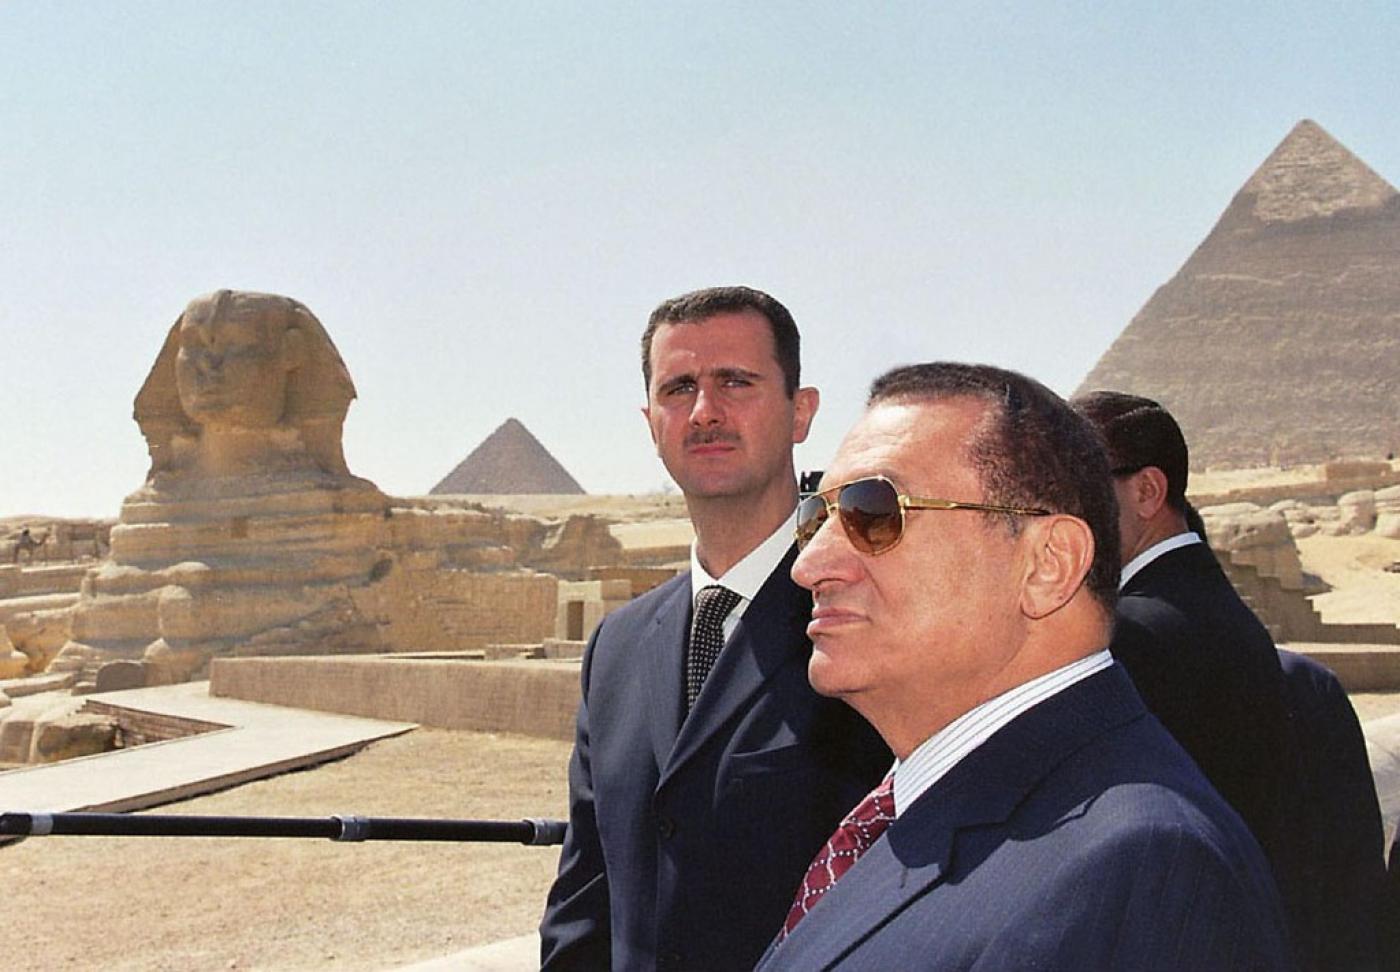 "مبارك فرعون" : كشف تقييم دبلوماسي بريطاني سلبي عن الرئيس المصرى المخلوع حسني مبارك